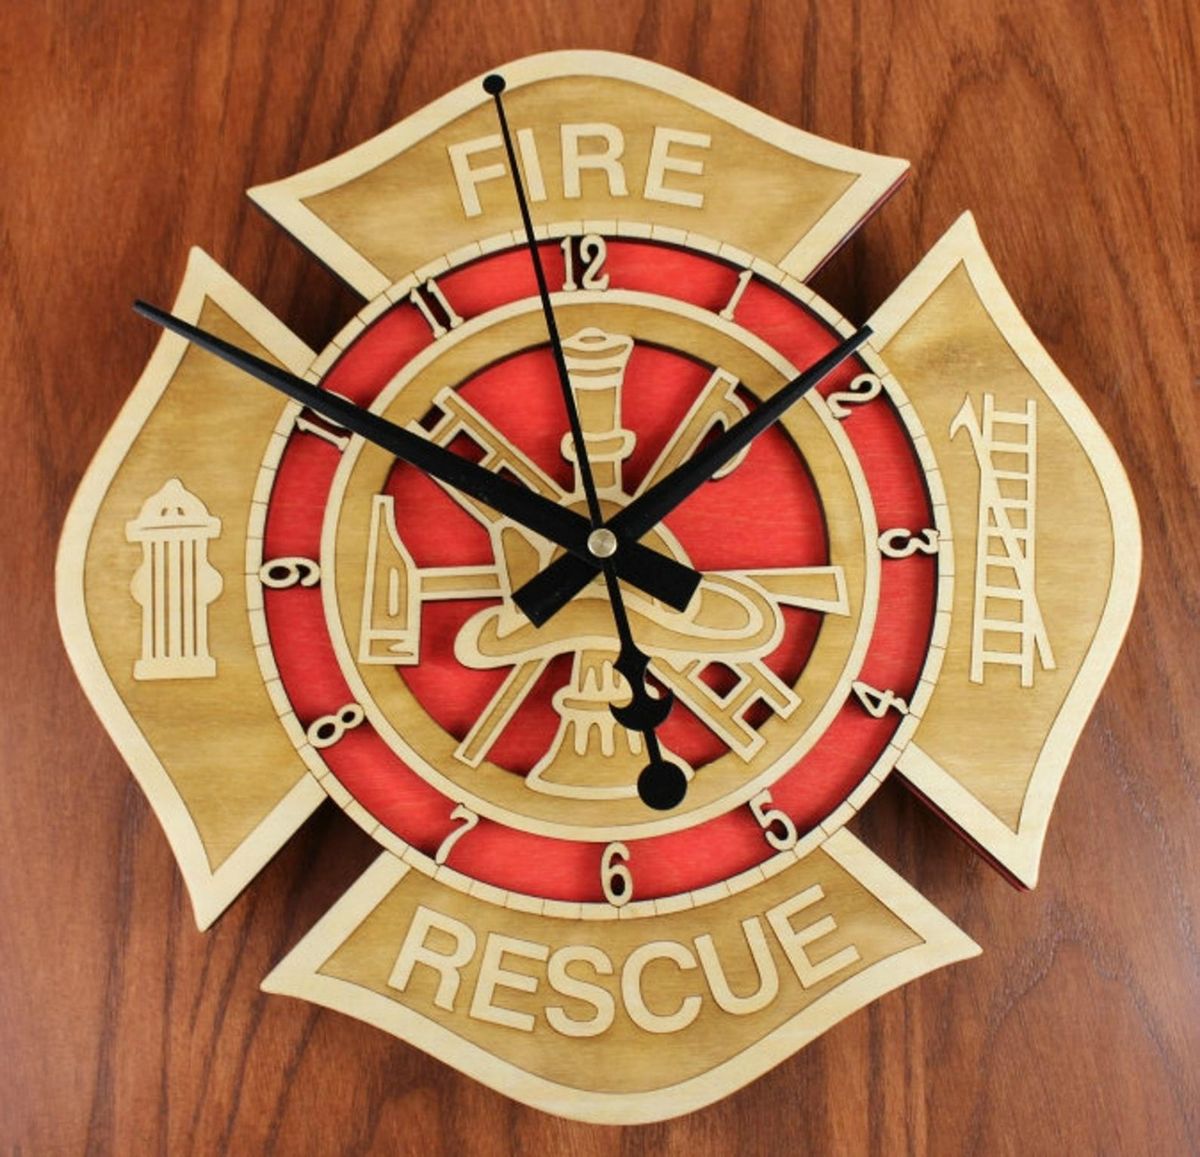 Firefighter Fireman Miniature Desk Clock Fire Equipment Sanis New In Box 